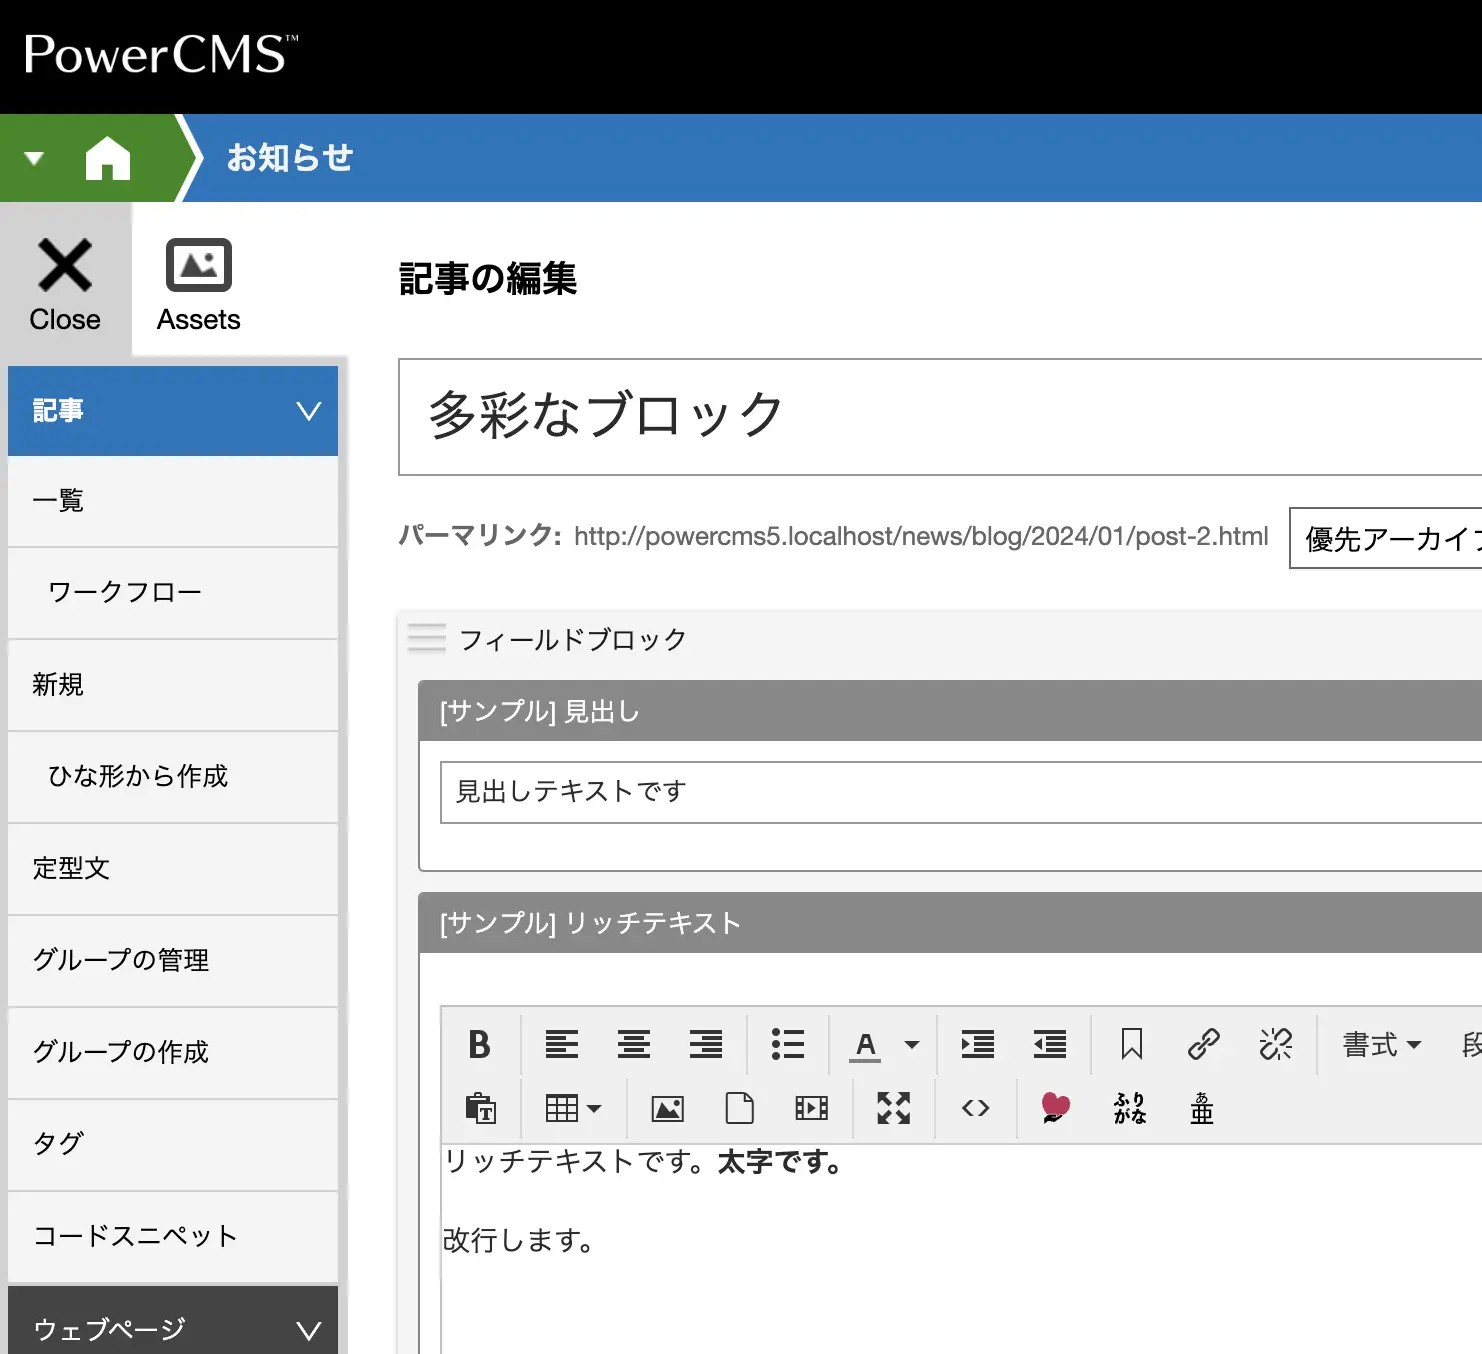 PowerCMS 5の管理画面でフィールドブロックを利用して入力した画面のキャプチャ